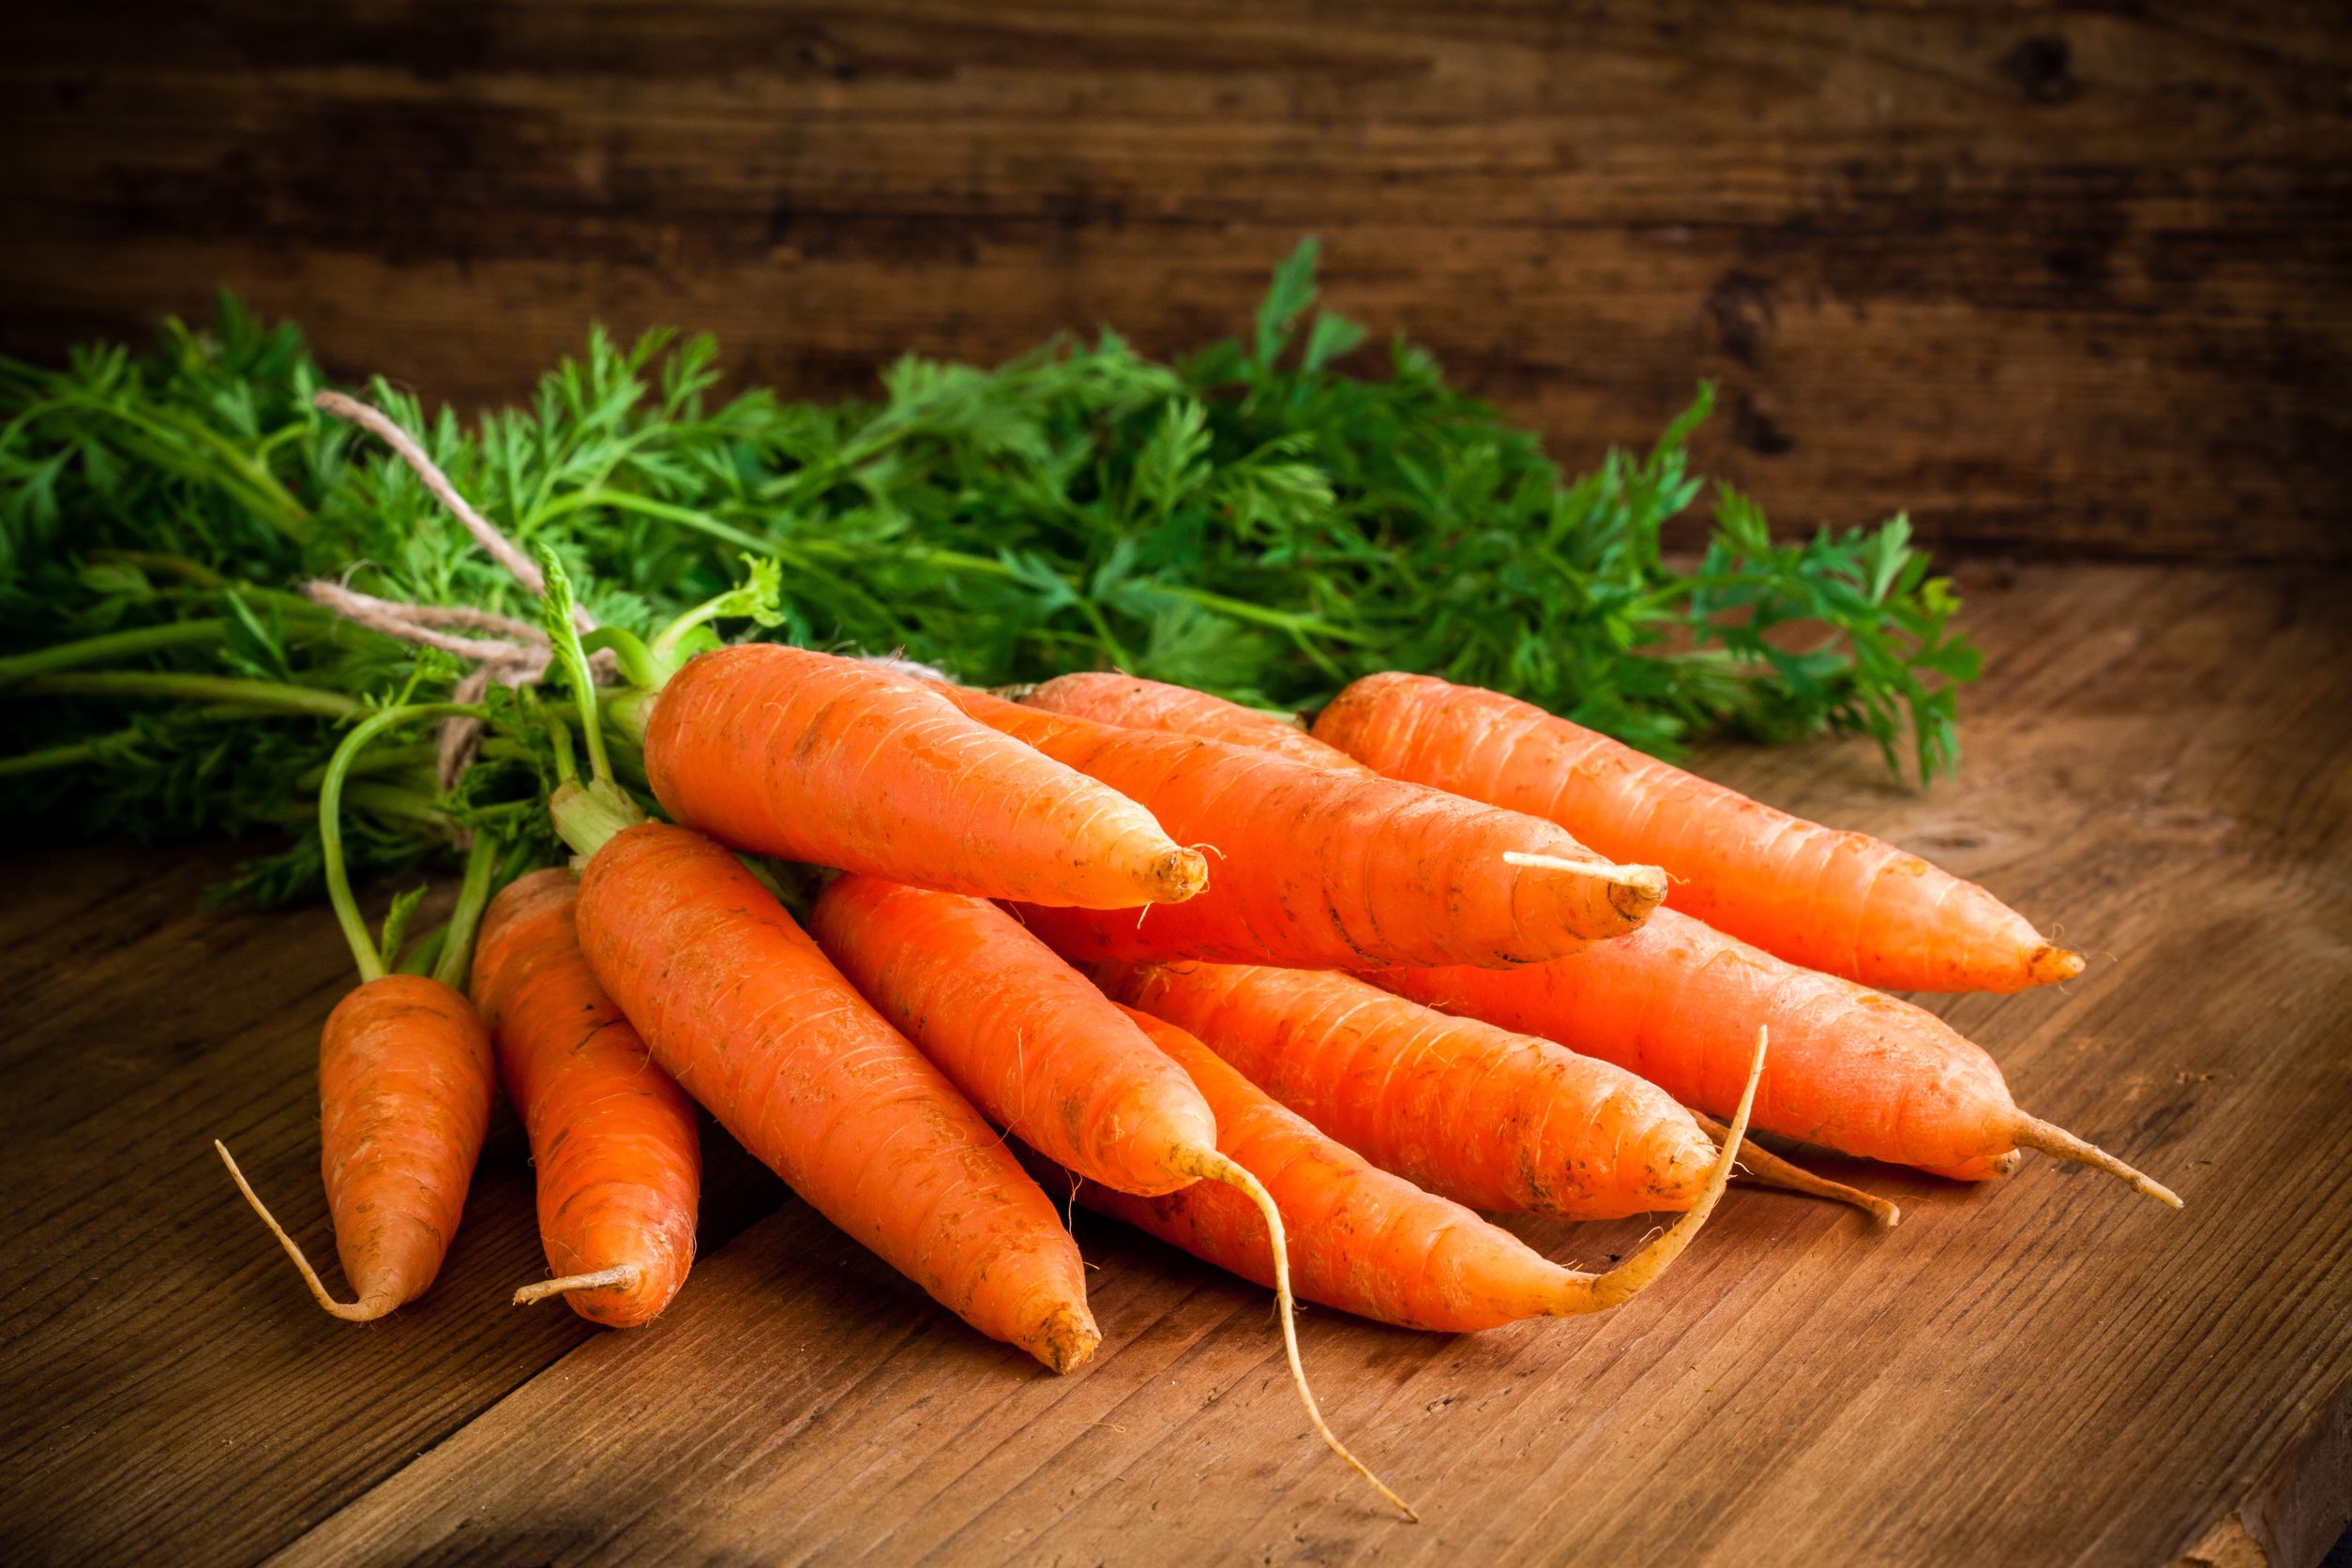 Ingredientes de las recetas con zanahoria